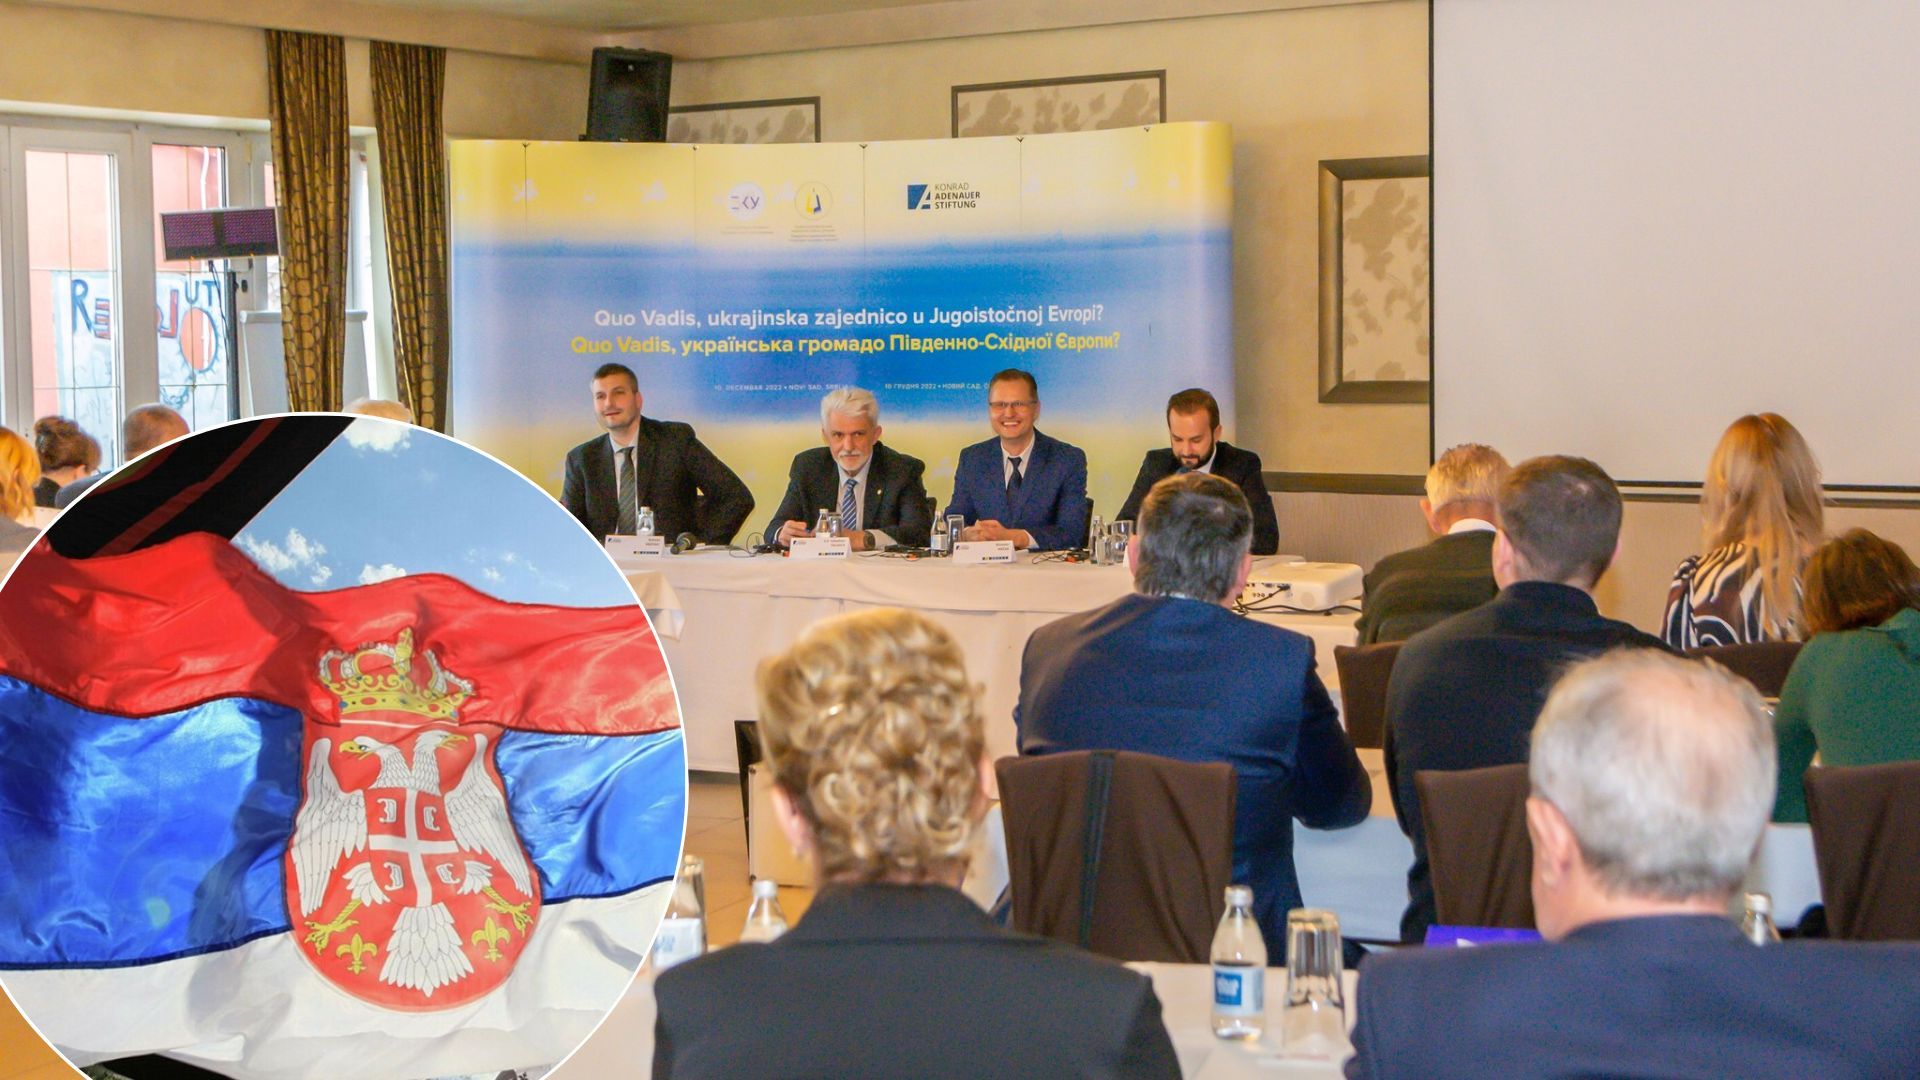 Біженці з України - у Сербії відбулася коференція щодо допомоги українцям